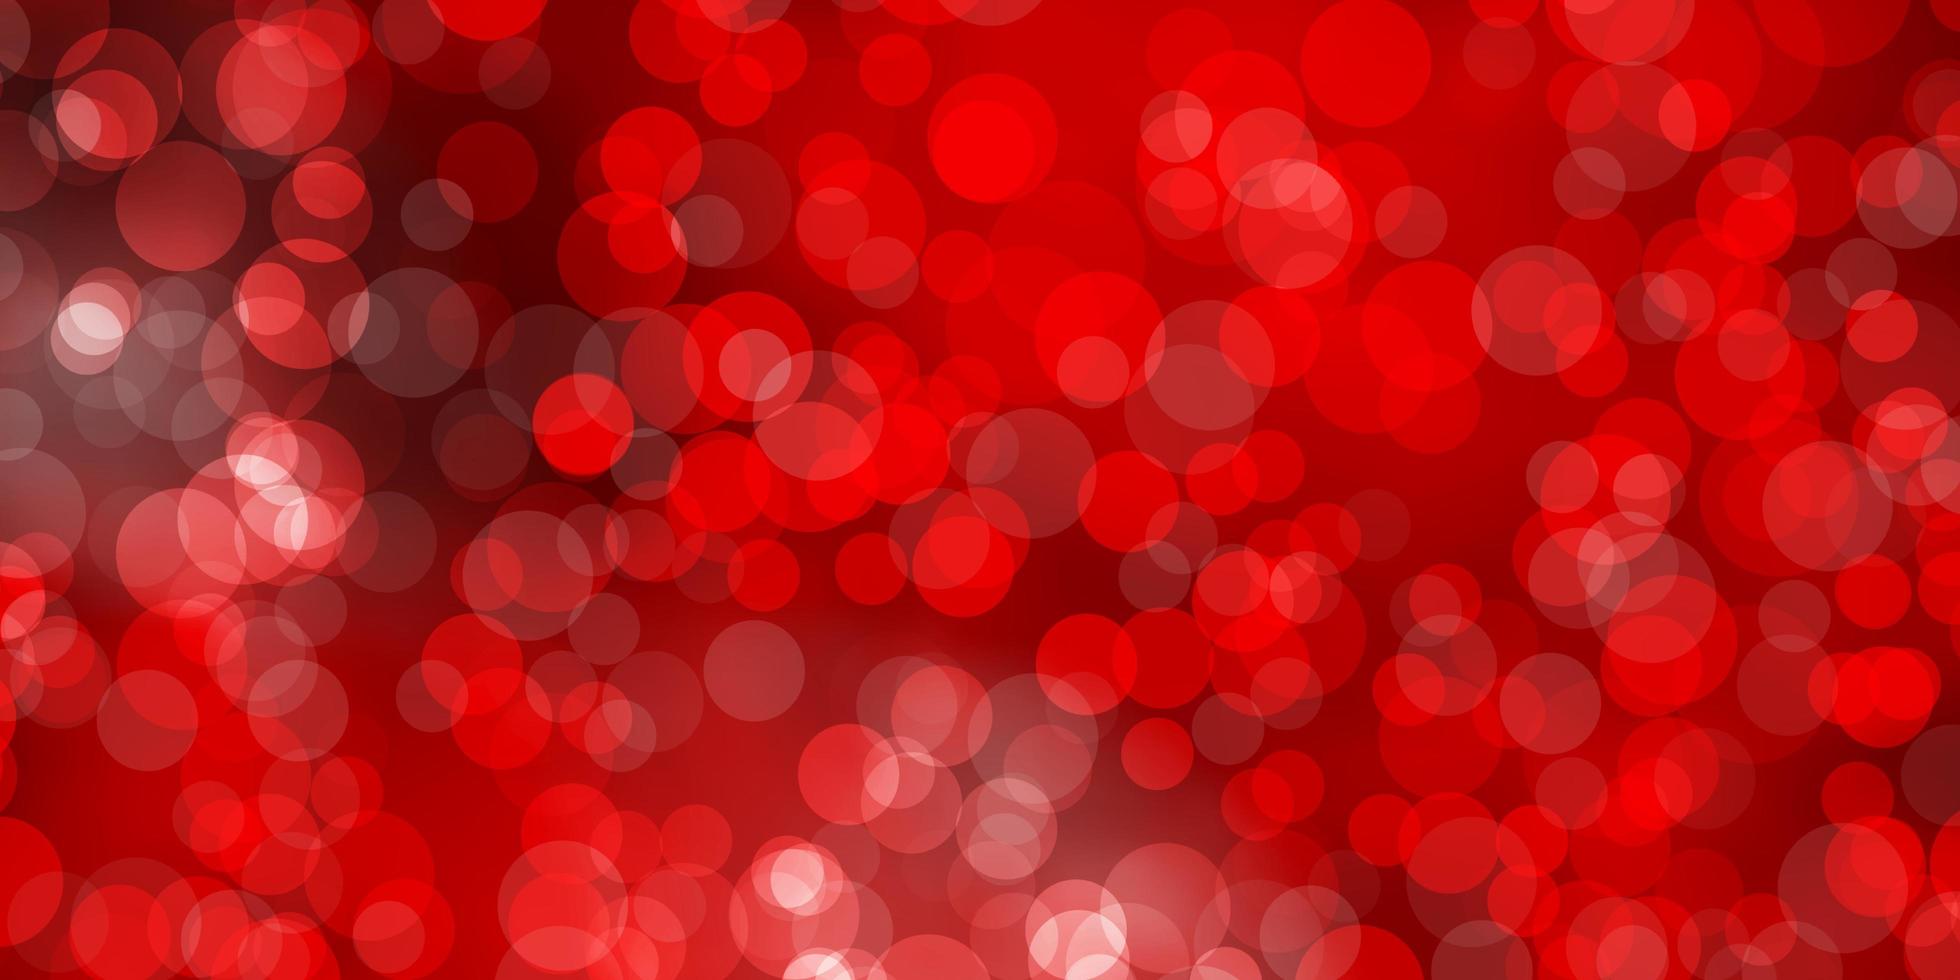 padrão de vetor vermelho claro com esferas brilhantes ilustração abstrata com padrão de gotas coloridas para cortinas de papéis de parede